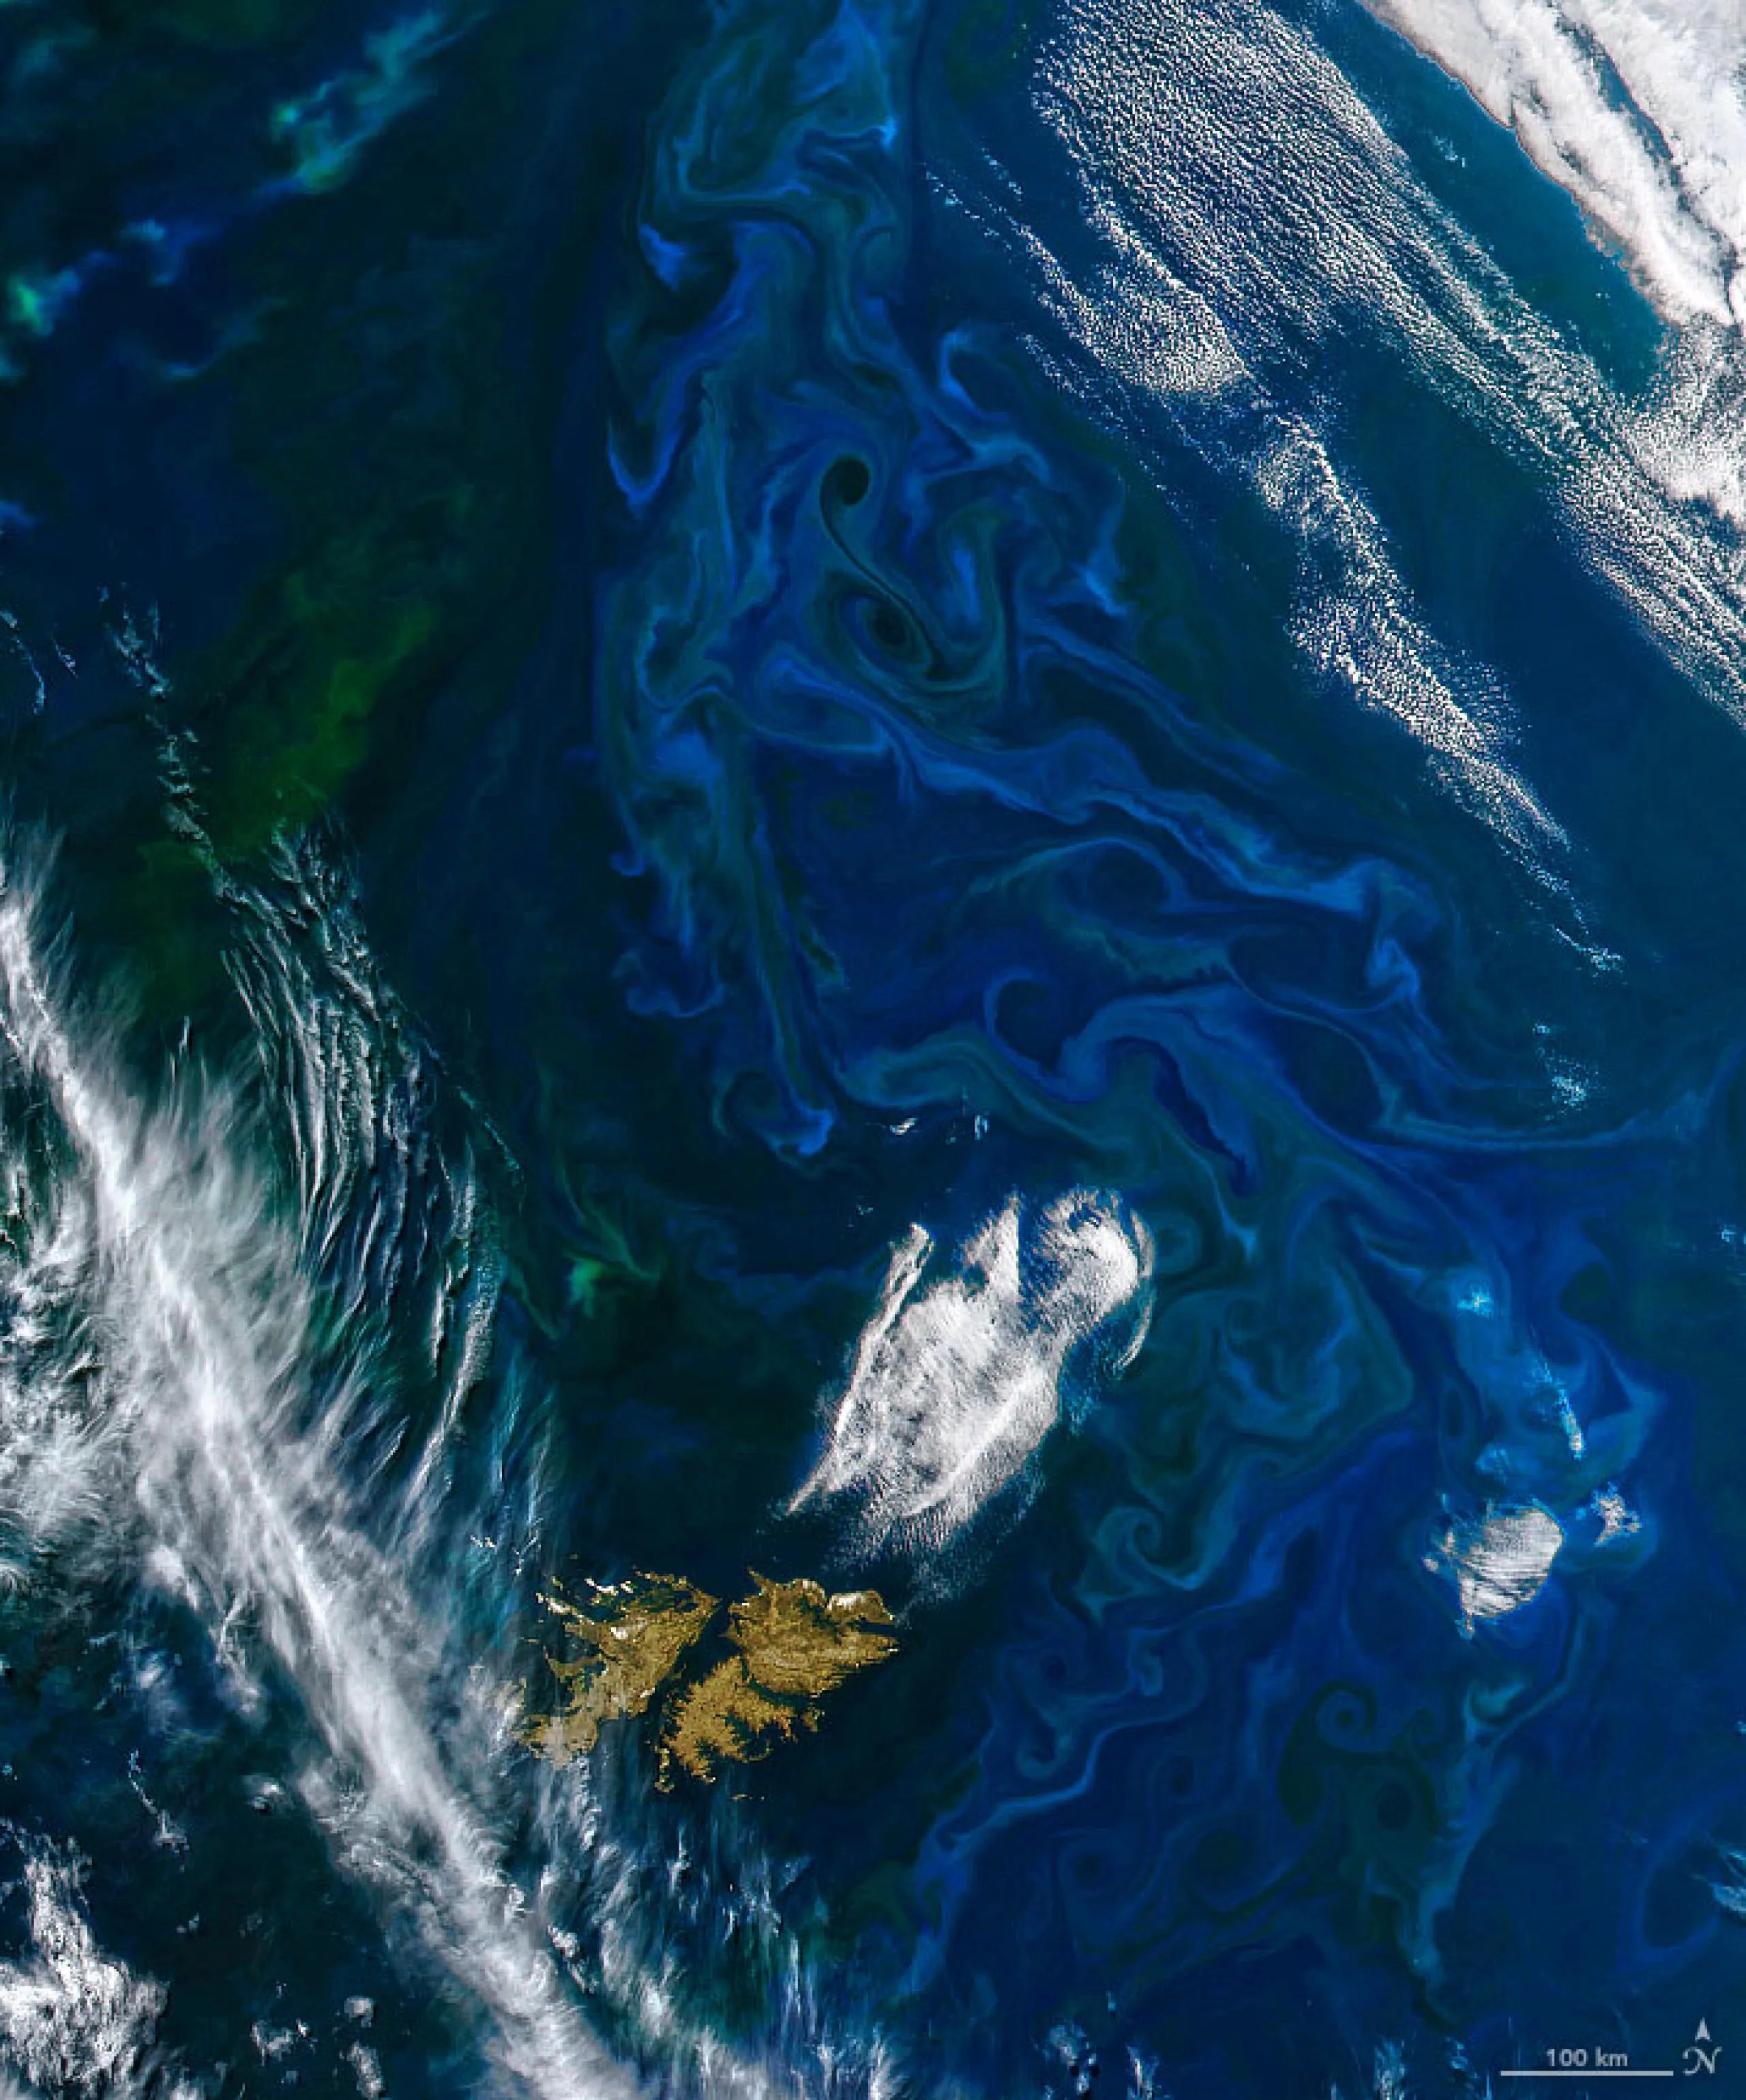 A medida que se acercaba el verano en el hemisferio sur, una proliferación de fitoplancton se hizo visible frente a las costas de Argentina. Esta imagen fue adquirida el 21 de noviembre de 2022 con instrumento MODIS a bordo del satélite Terra de la NASA.